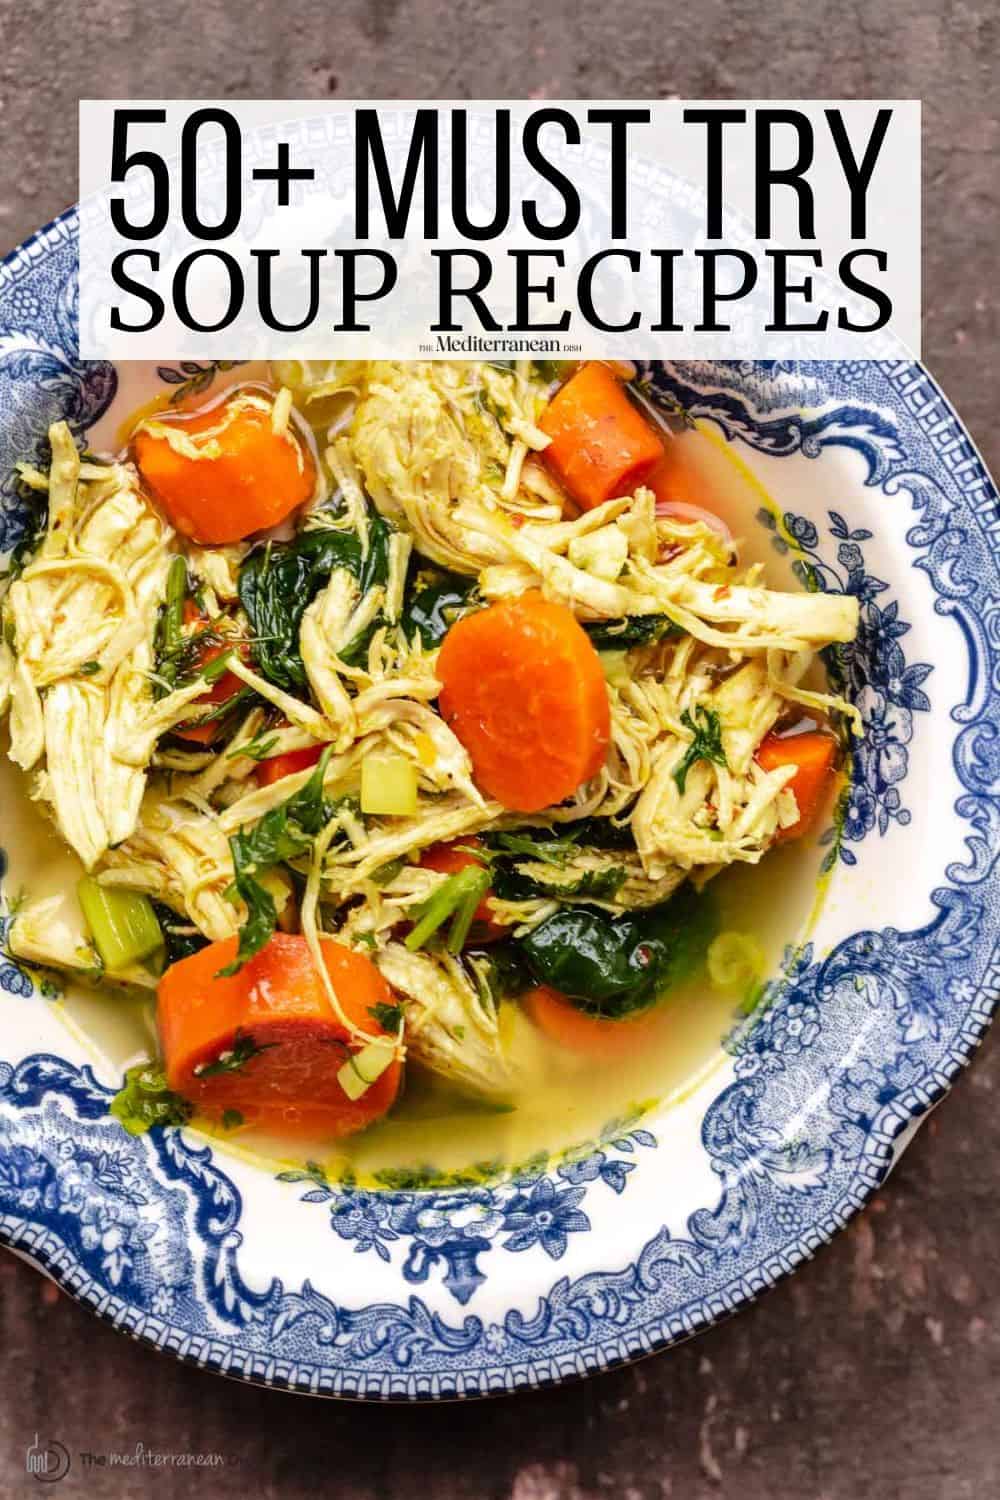 Splendid Soups: Splendid Soups & Spectacular Sides to Make a Meal